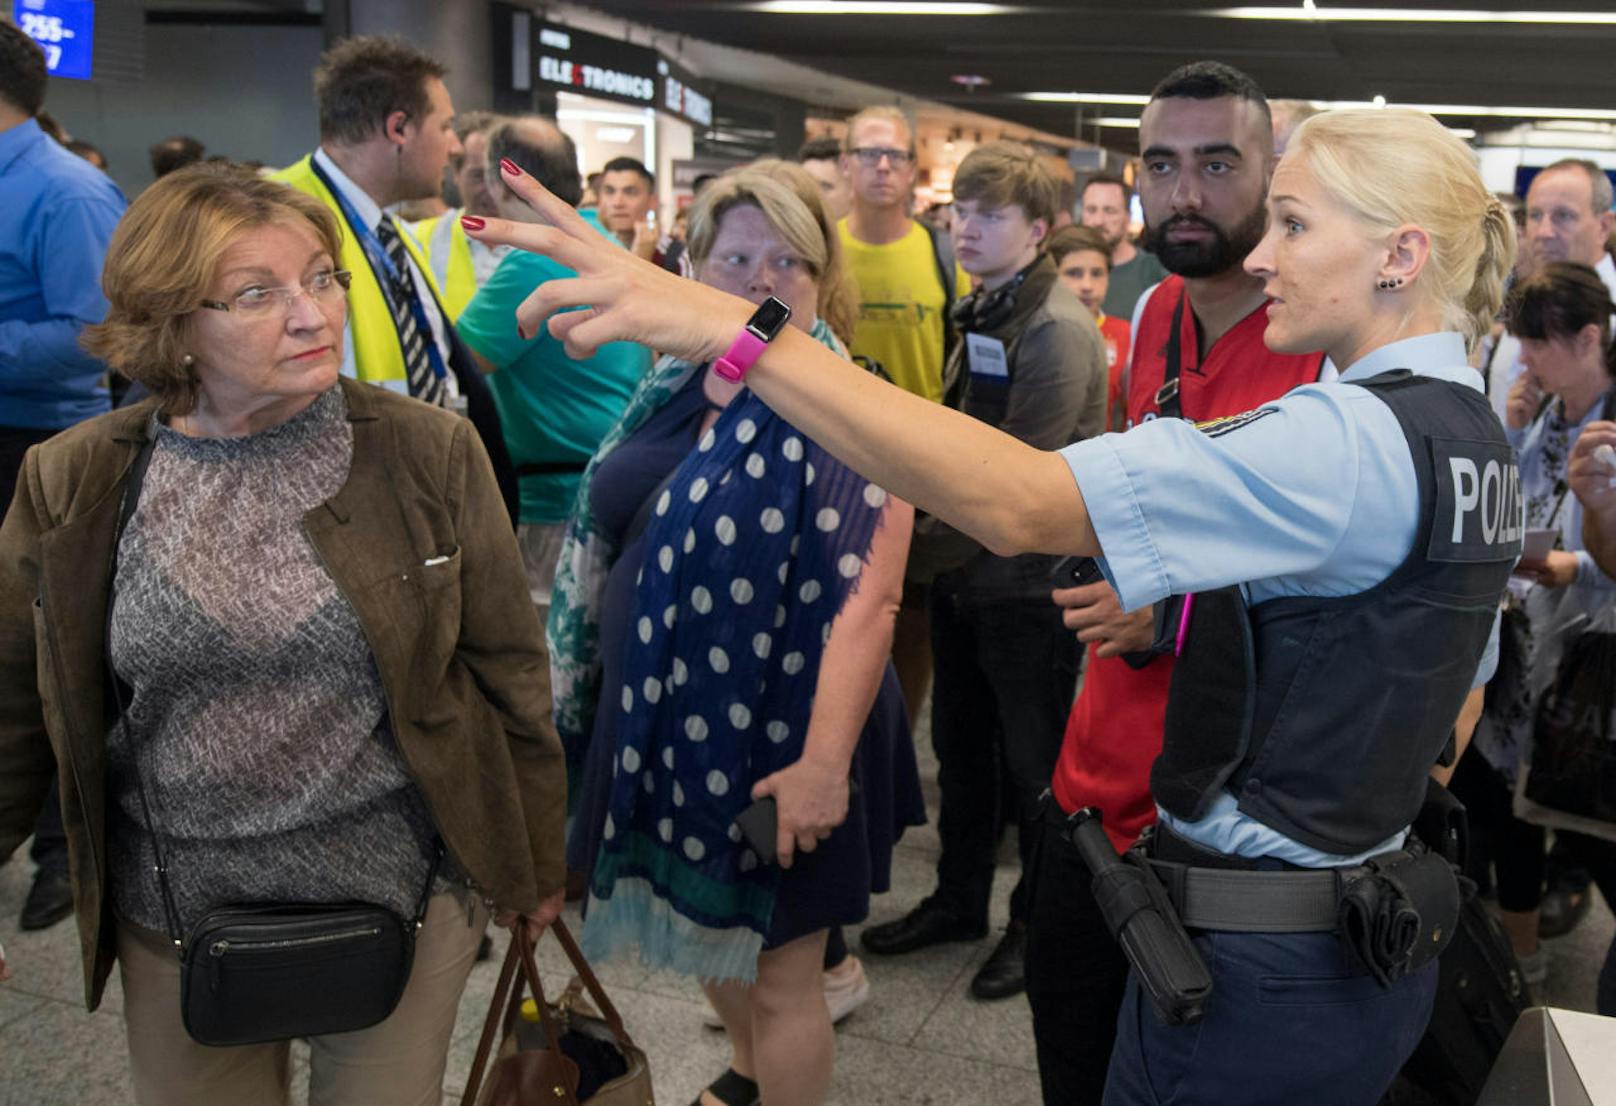 Polizisten und Passagiere stehen in Halle A im Terminal 1 des Flughafens Frankfurt. Am Flughafen läuft eine Teilräumung in einem der Abfertigungsgebäude. Grund dafür ist laut Bundespolizei ein Vorfall an der Sicherheitskontrolle, mindestens eine Person ist unberechtigt in den Sicherheitsbereich gelangt. 